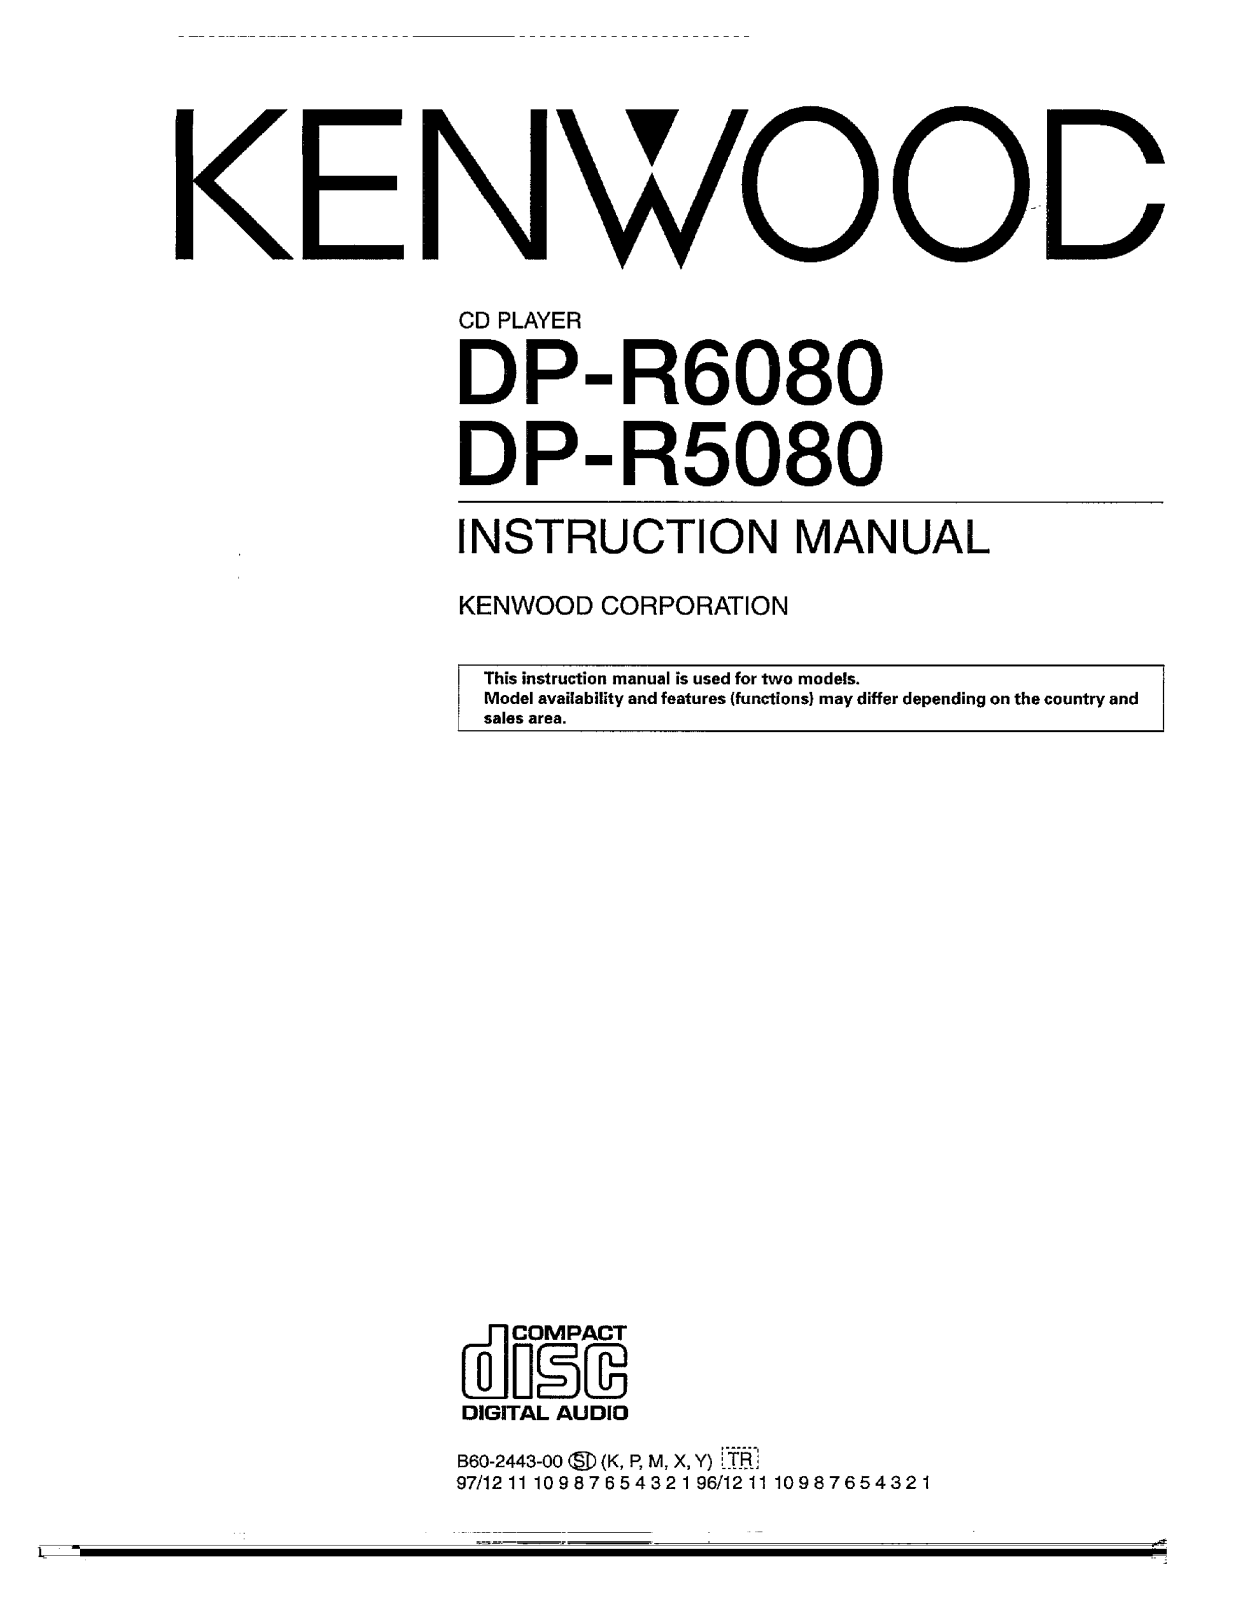 Kenwood DP-R6080, DP-R5080 Owner's Manual